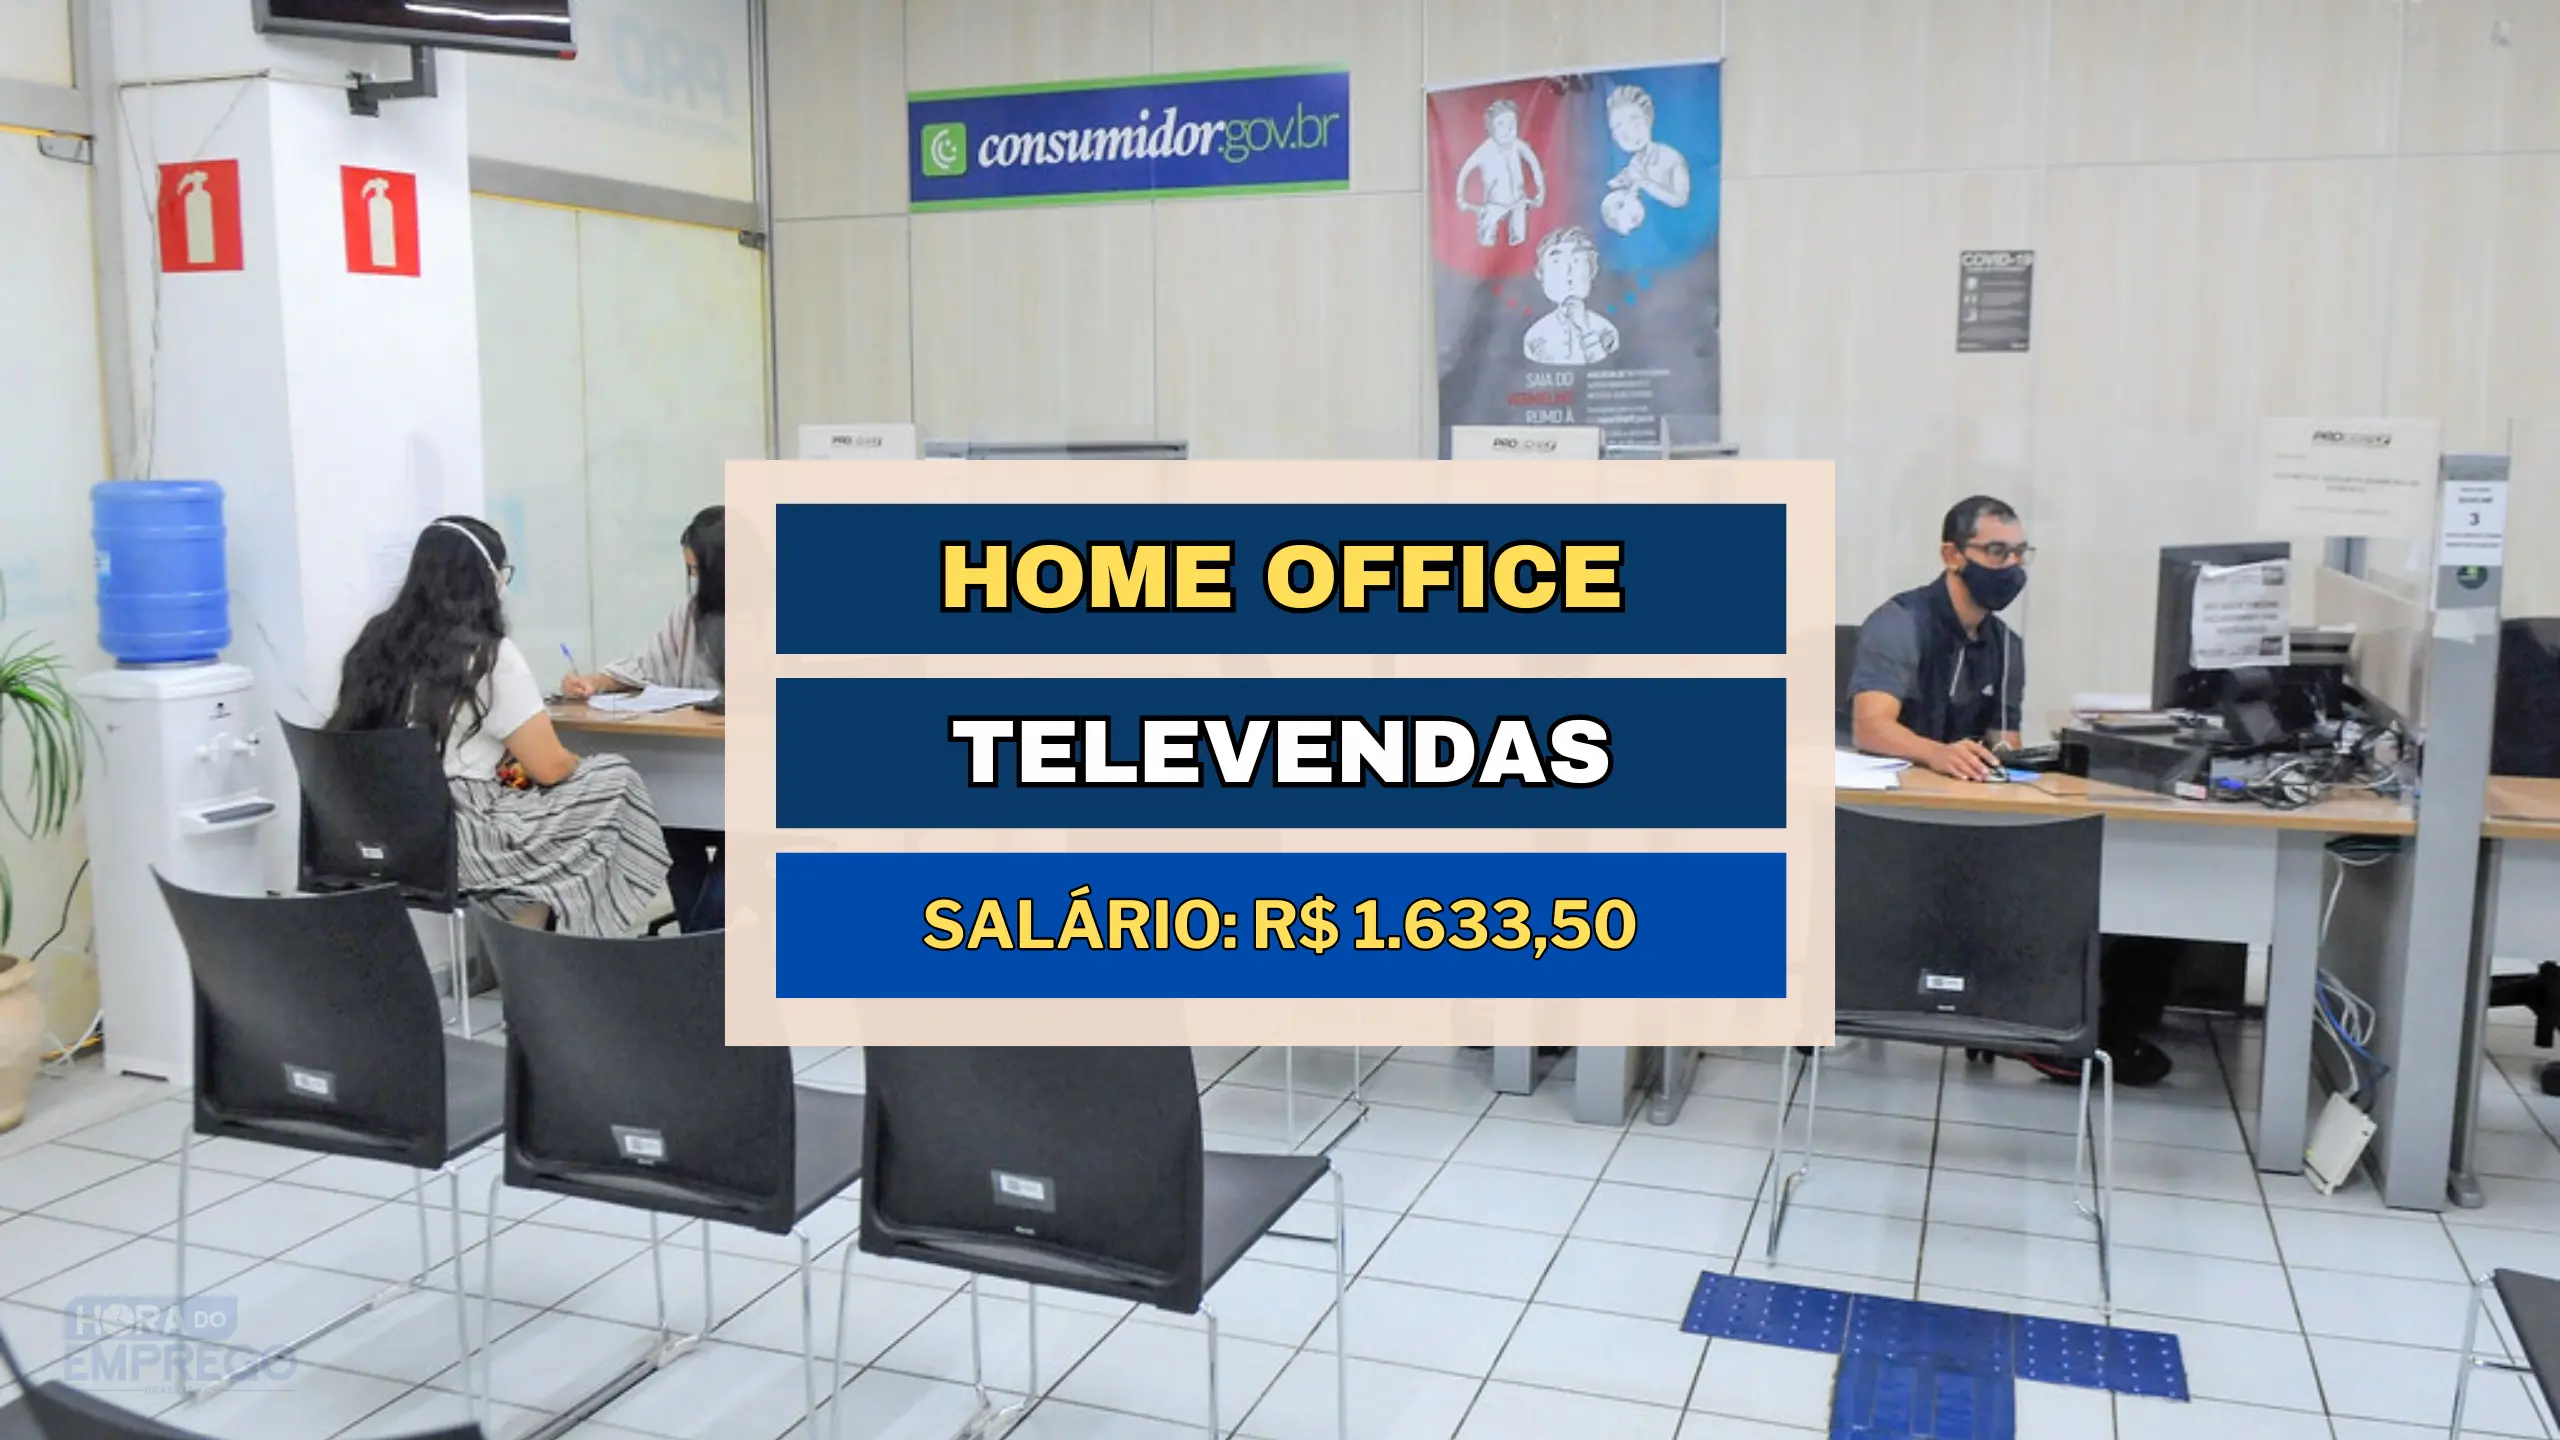 Vagas HOME OFFICE 06 horas por dia para Operador de Televendas Ativo com salário de R$ 1.633,50 e Alimentação de R$ 30,00 por dia